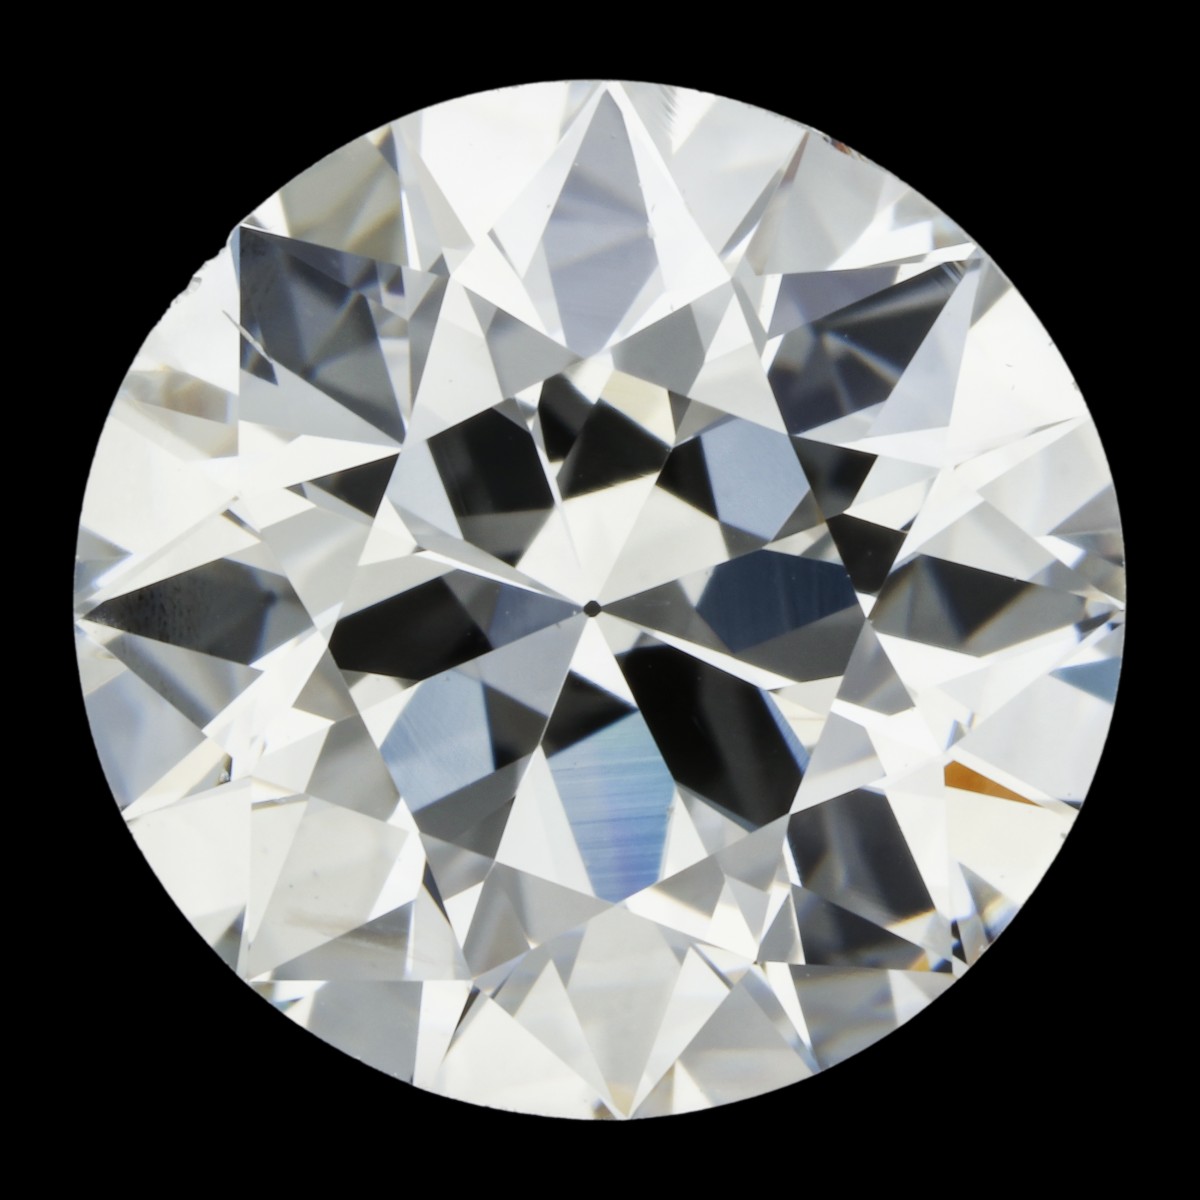 1.79 ct. GIA gecertificeerde natuurlijke diamant.